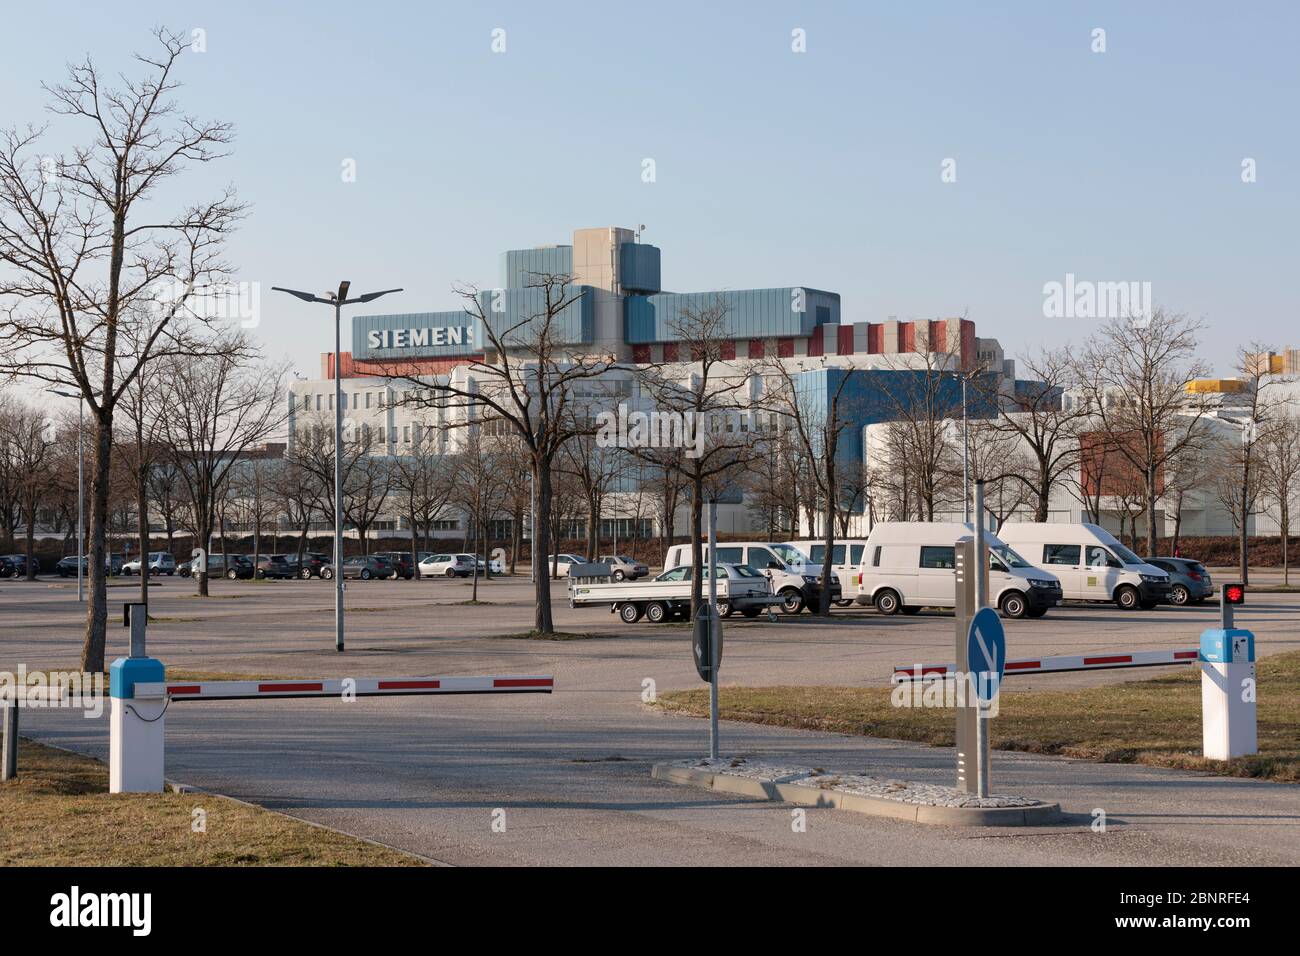 Siemens baut in den Tagen des Corona-Virus wieder mit leerem Parkplatz am Nachmittag an Wochentagen Stockfoto